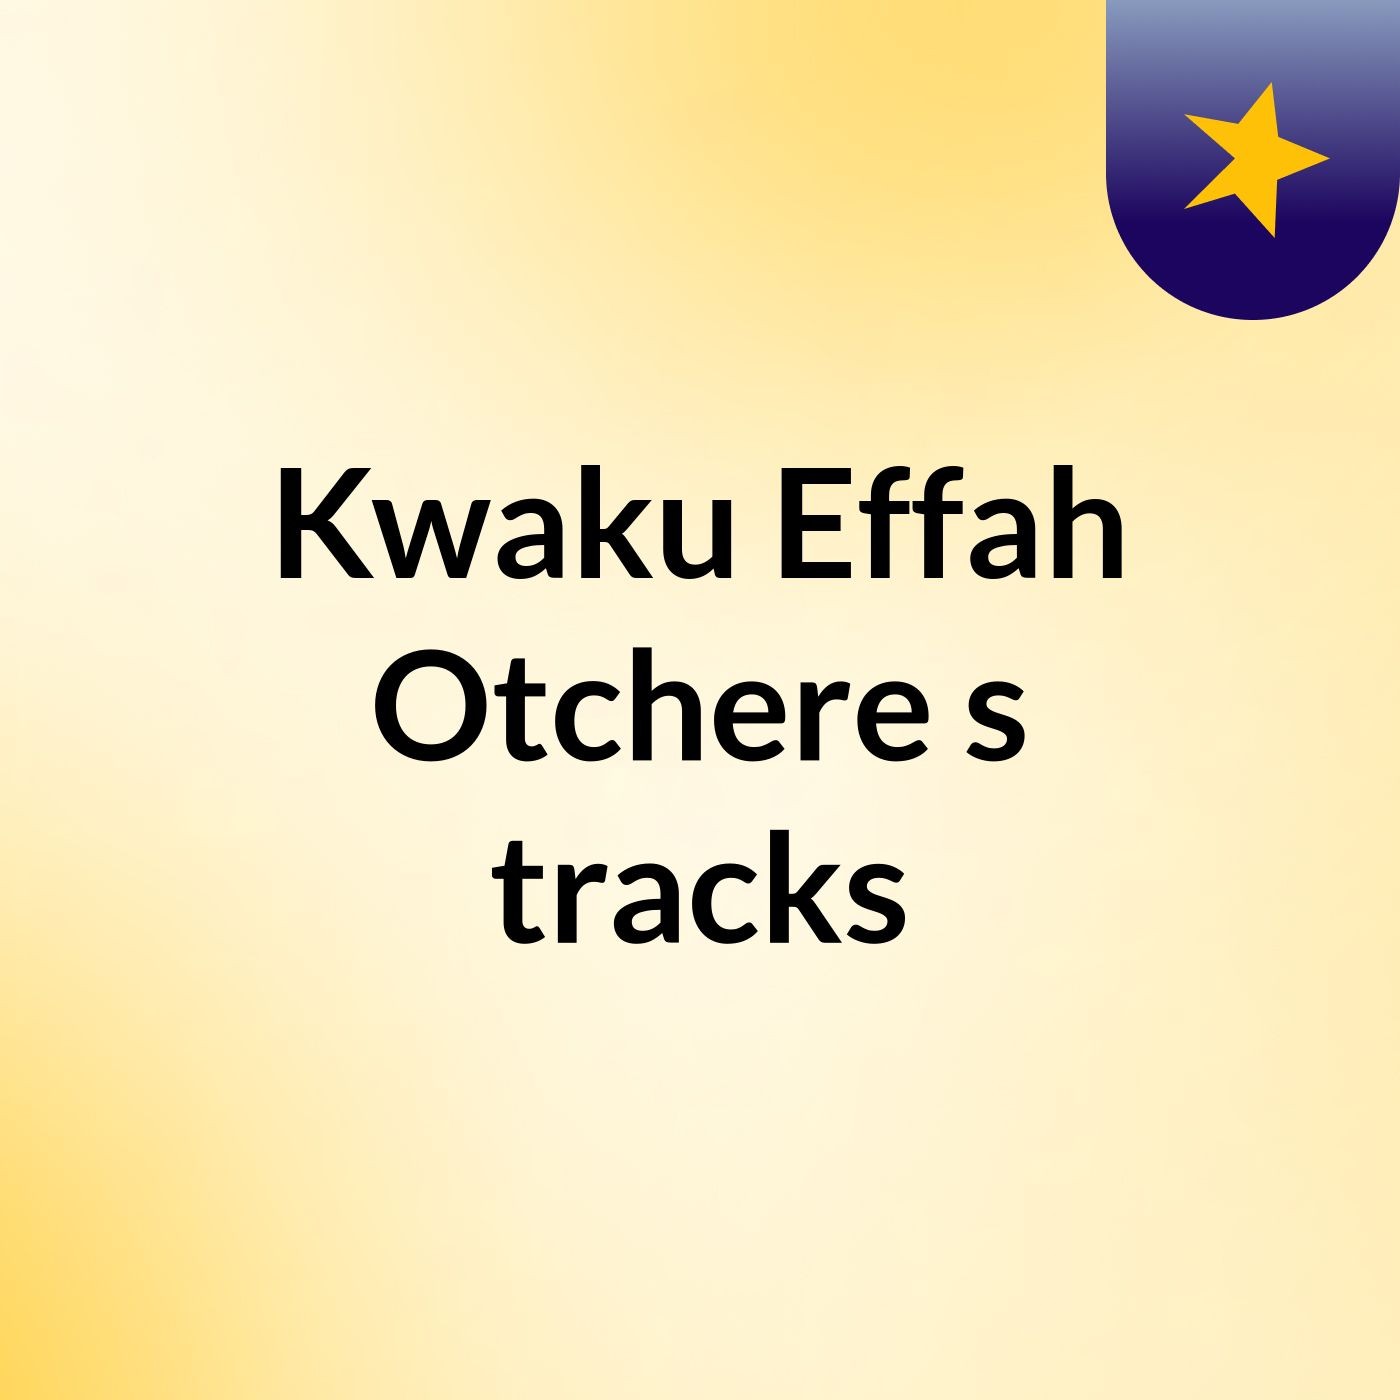 Kwaku Effah Otchere's tracks